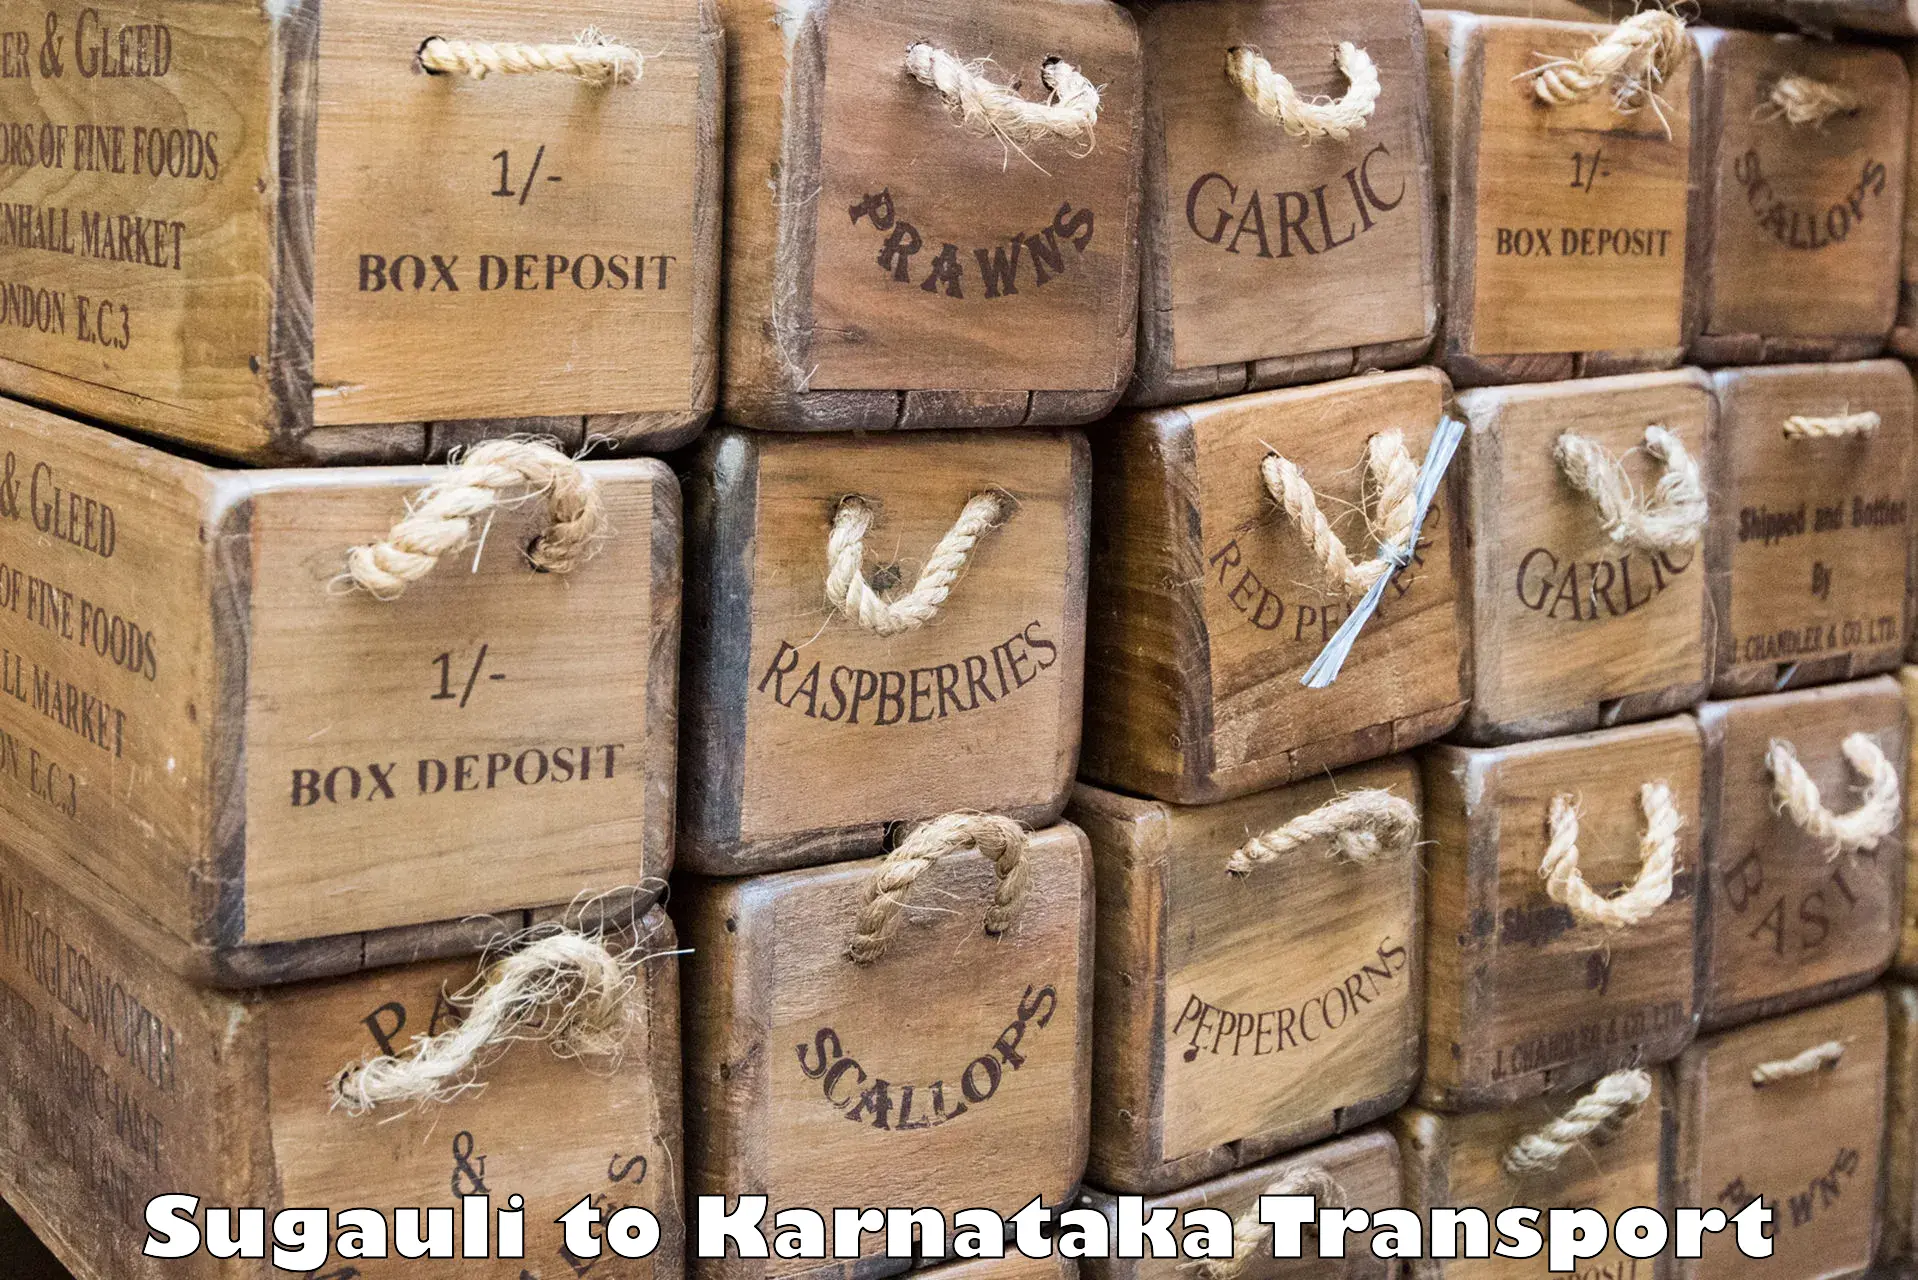 Two wheeler parcel service Sugauli to Karnataka